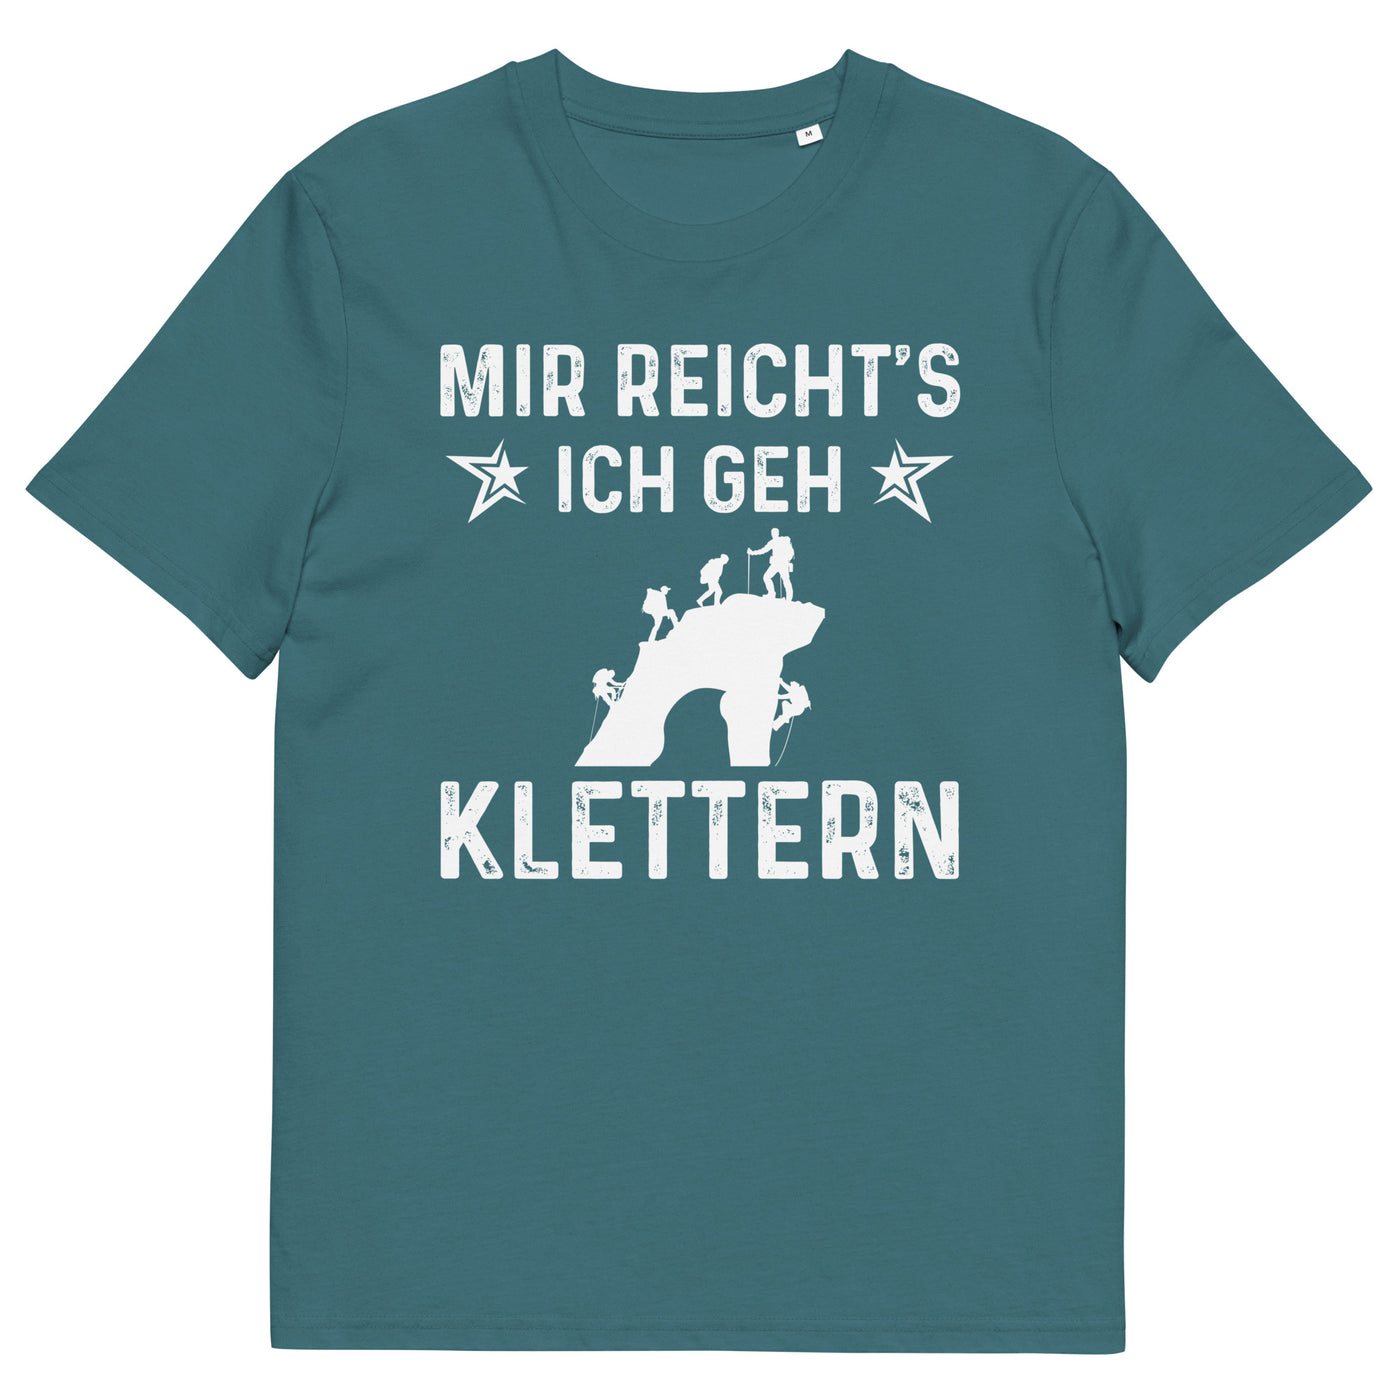 Mir Reicht's Ich Gen Klettern - Herren Premium Organic T-Shirt klettern xxx yyy zzz Stargazer